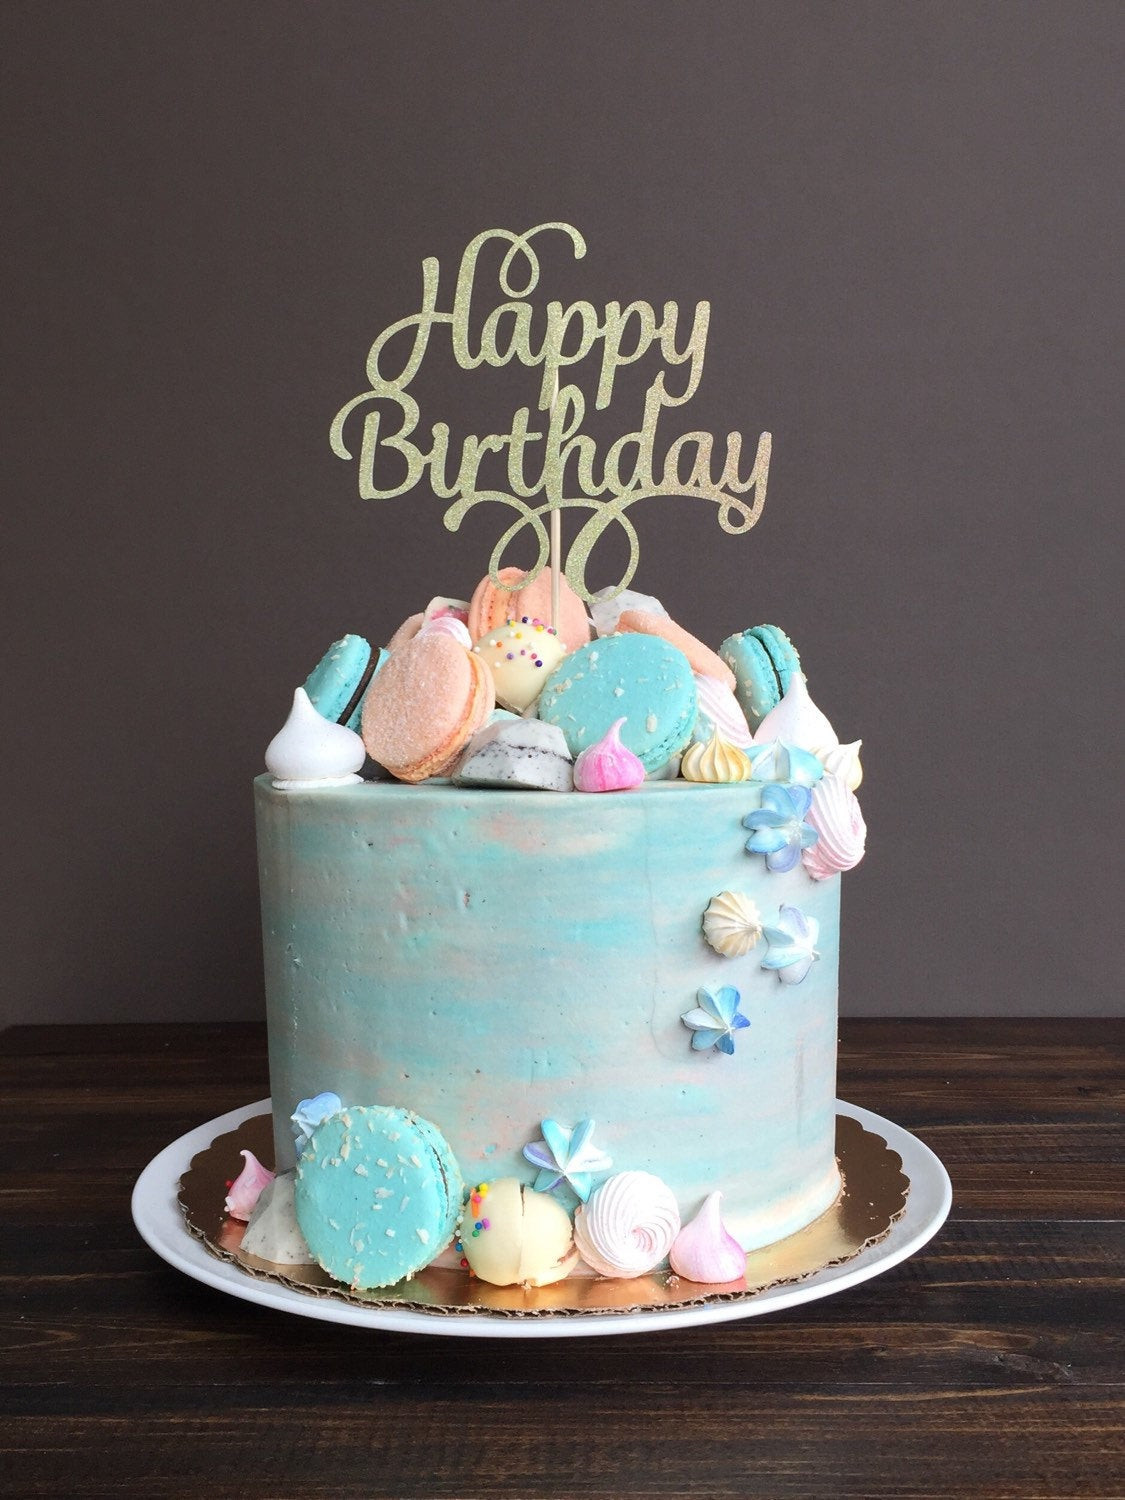 Happy Birthday Cakes
 Cake topper Happy Birthday cake topper birthday cake